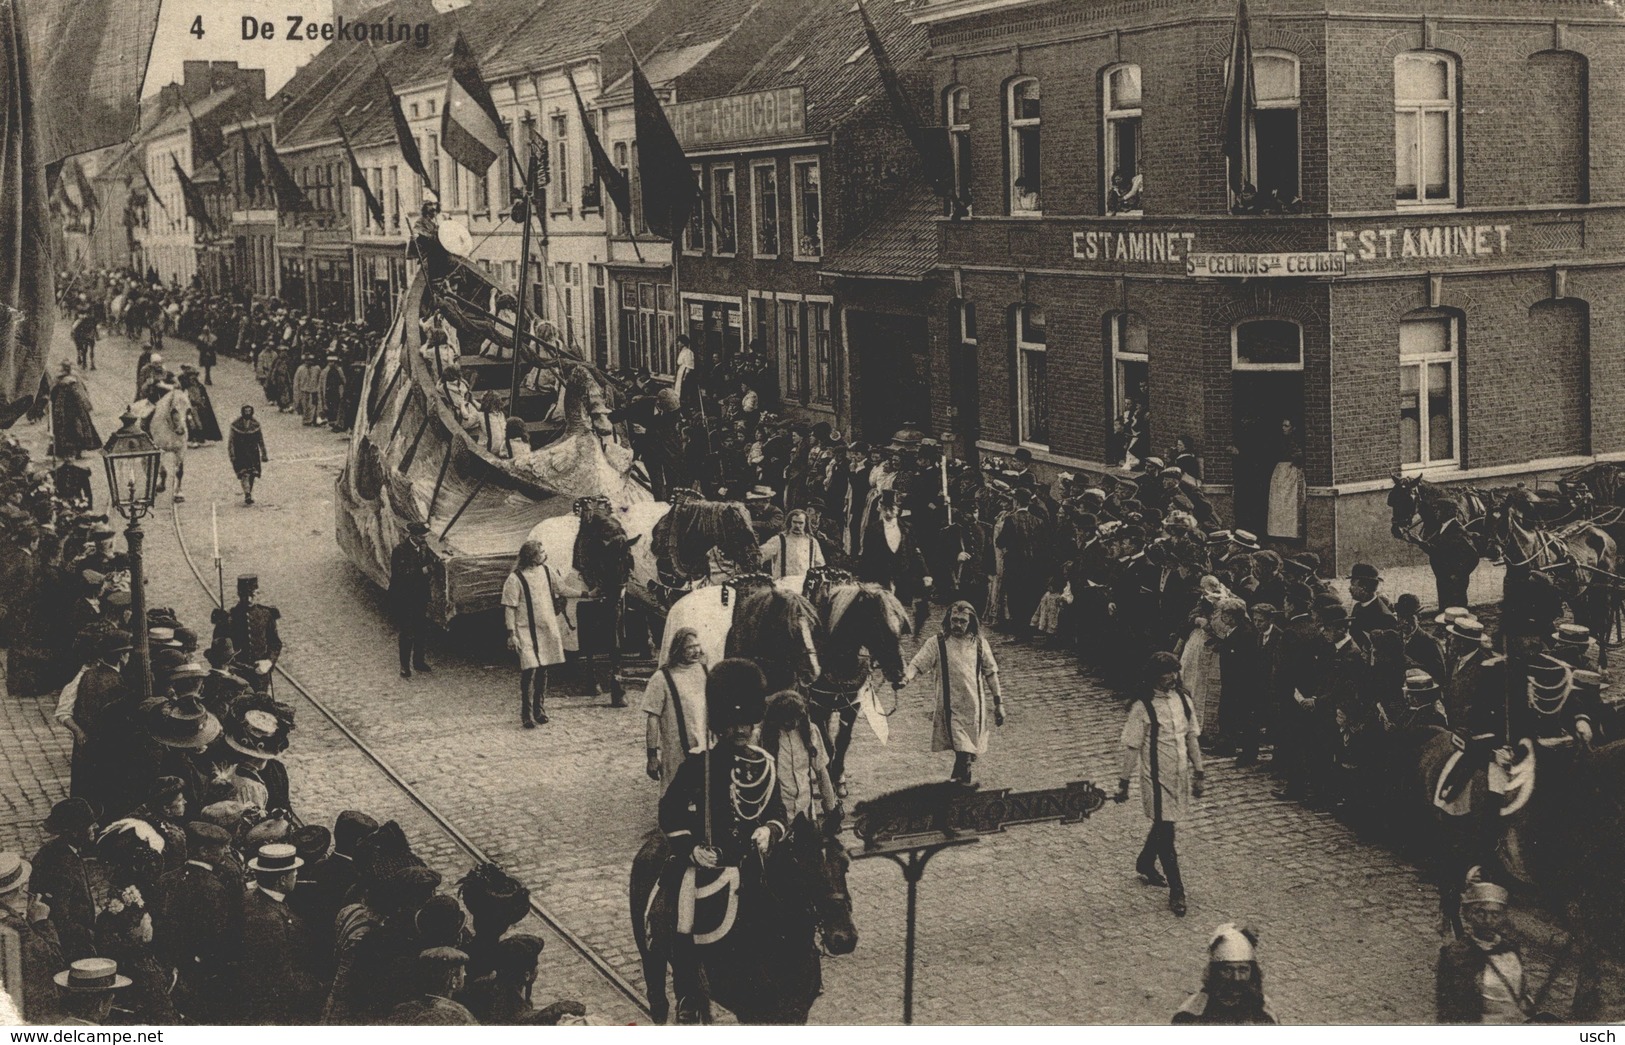 Cpa ROESELARE - ROULERS, De Zeekoning, Rodenbachfeesten - 1914, Café Estaminet - Roeselare